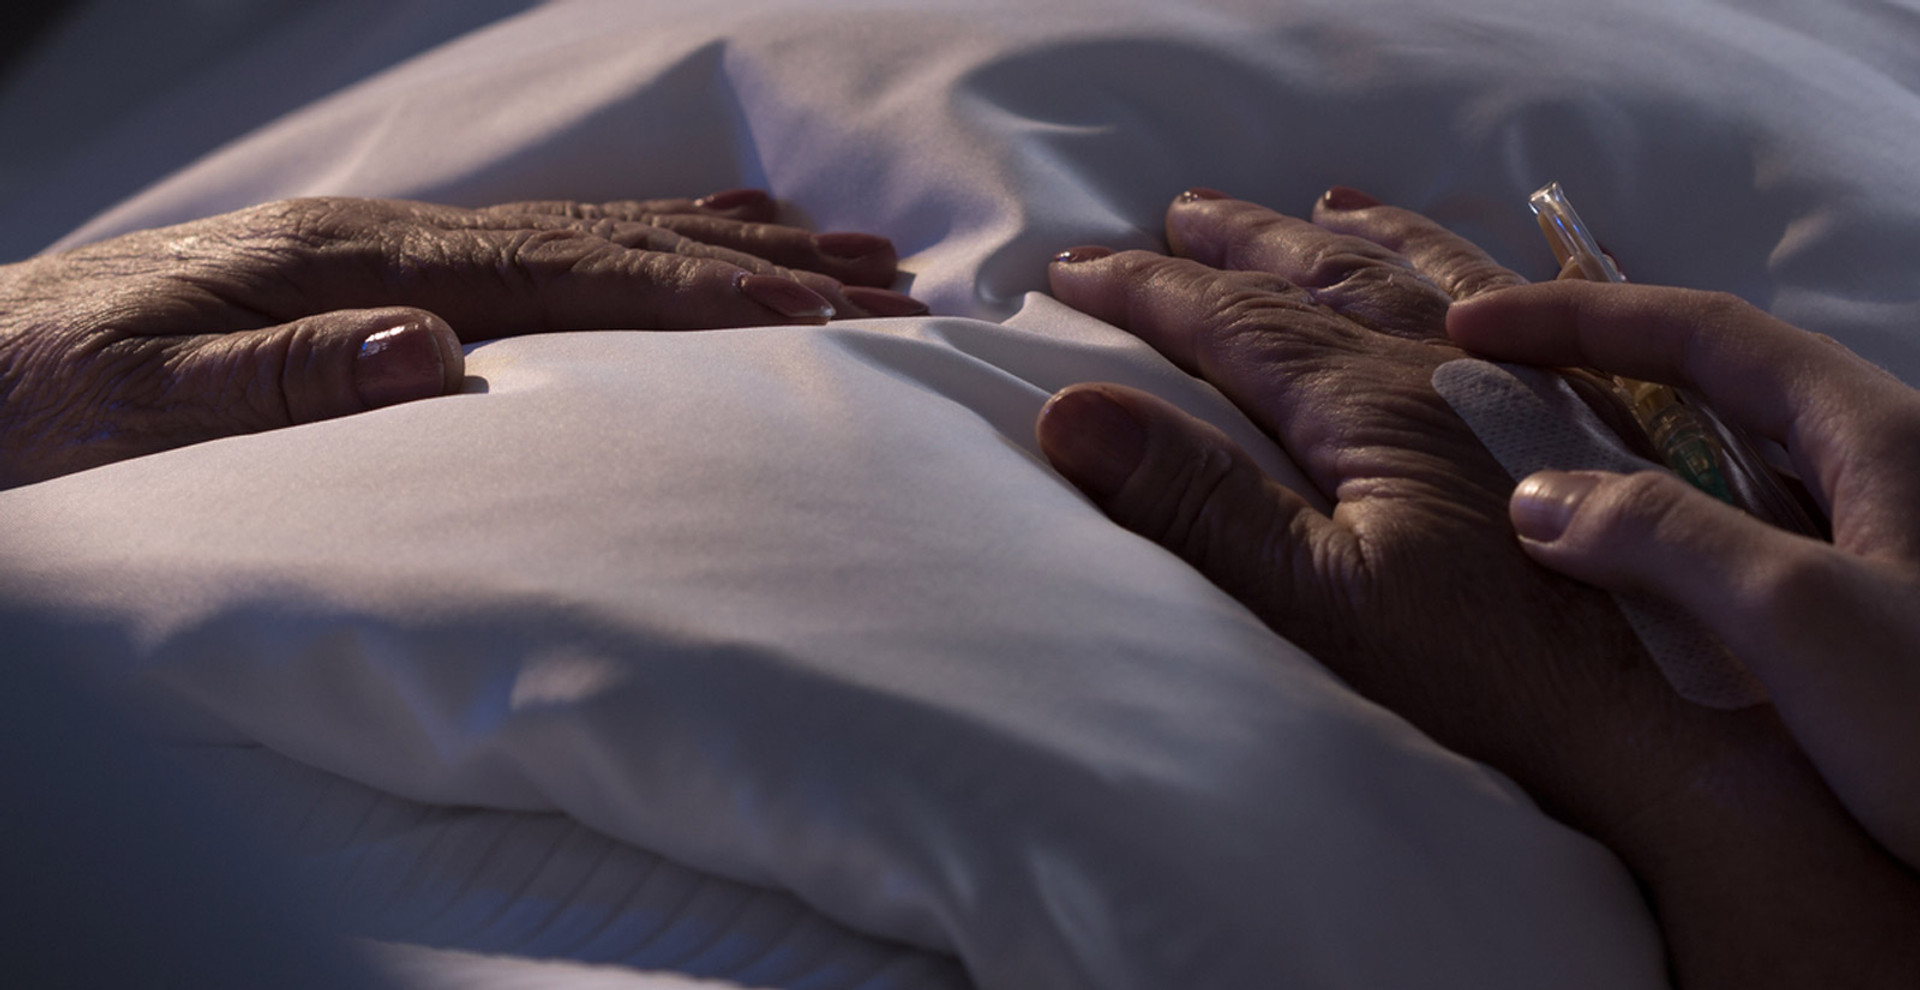 “Найбільше хвора боялася, що їй буде боліти”: лікарка паліативної медицини про догляд за важкими пацієнтами і право на гідну смерть